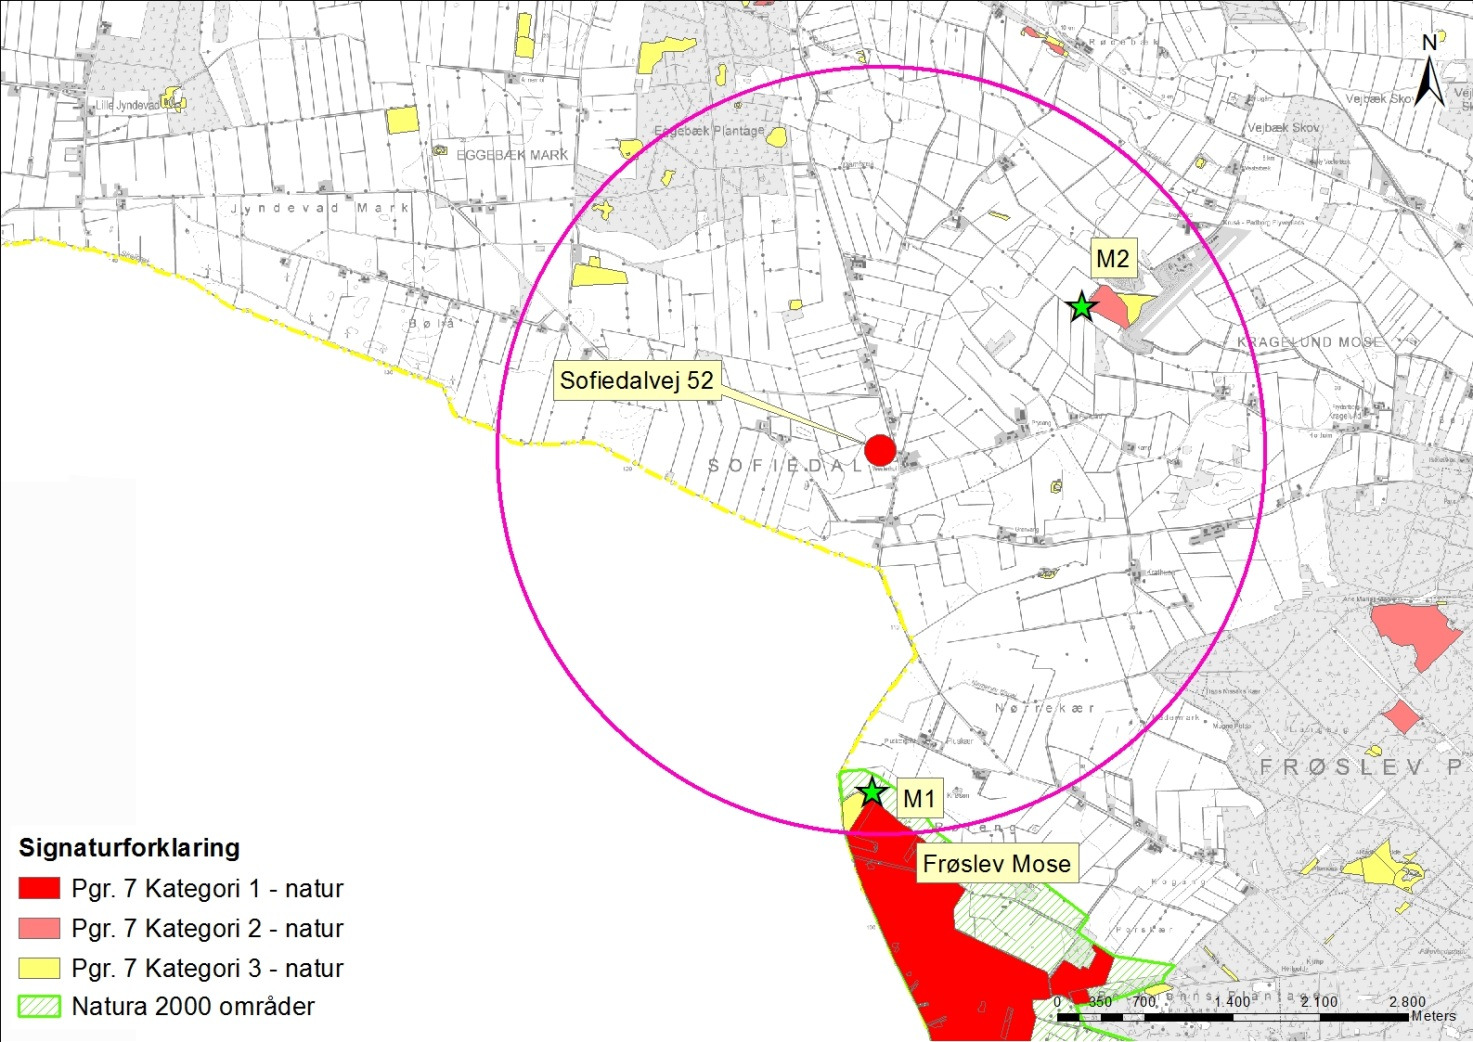 Kort 1. Anlægget (den røde cirkel) med nærmeste Natura 2000 område samt kategori 1-3 natur.